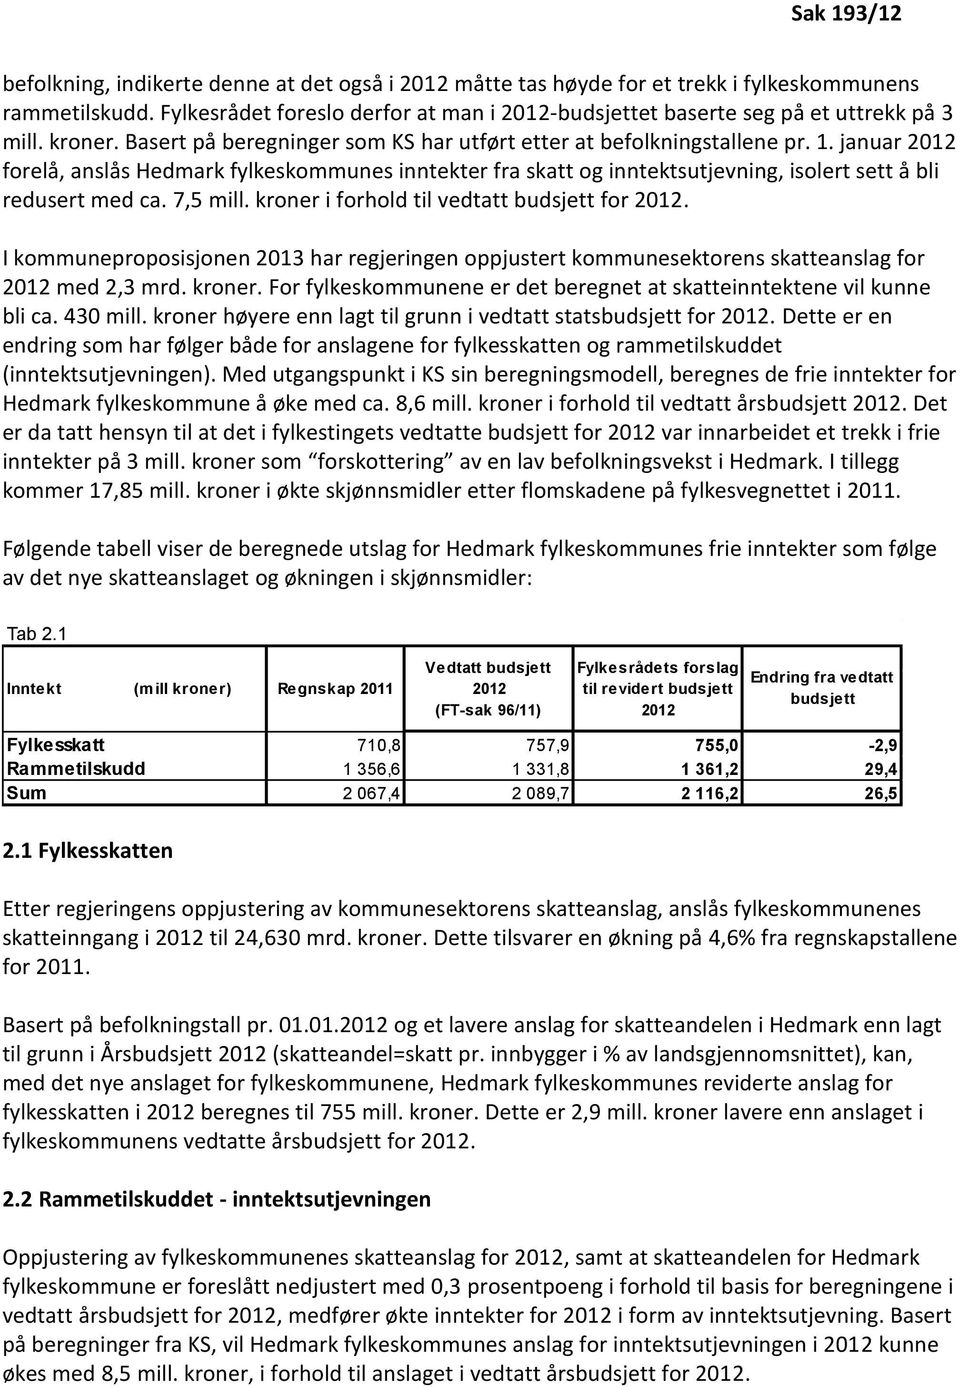 januar 2012 forelå, anslås Hedmark fylkeskommunes inntekter fra skatt og inntektsutjevning, isolert sett å bli redusert med ca. 7,5 mill. kroner i forhold til vedtatt budsjett for 2012.